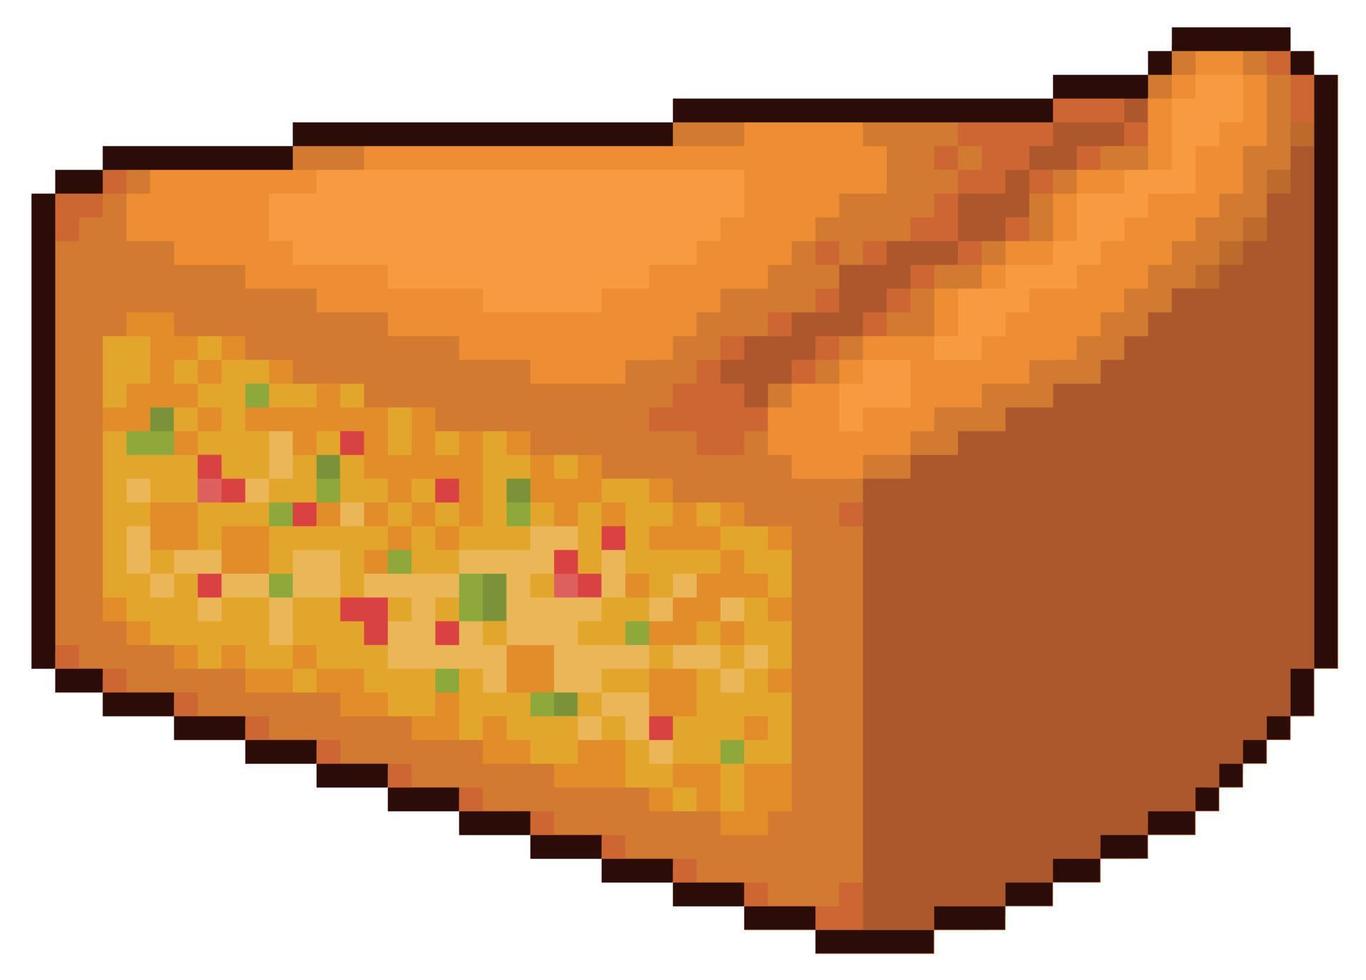 escala de comida de pixel art. comida saudável vs ícone de vetor de comida  ruim para jogo de 8 bits em fundo branco 9878006 Vetor no Vecteezy